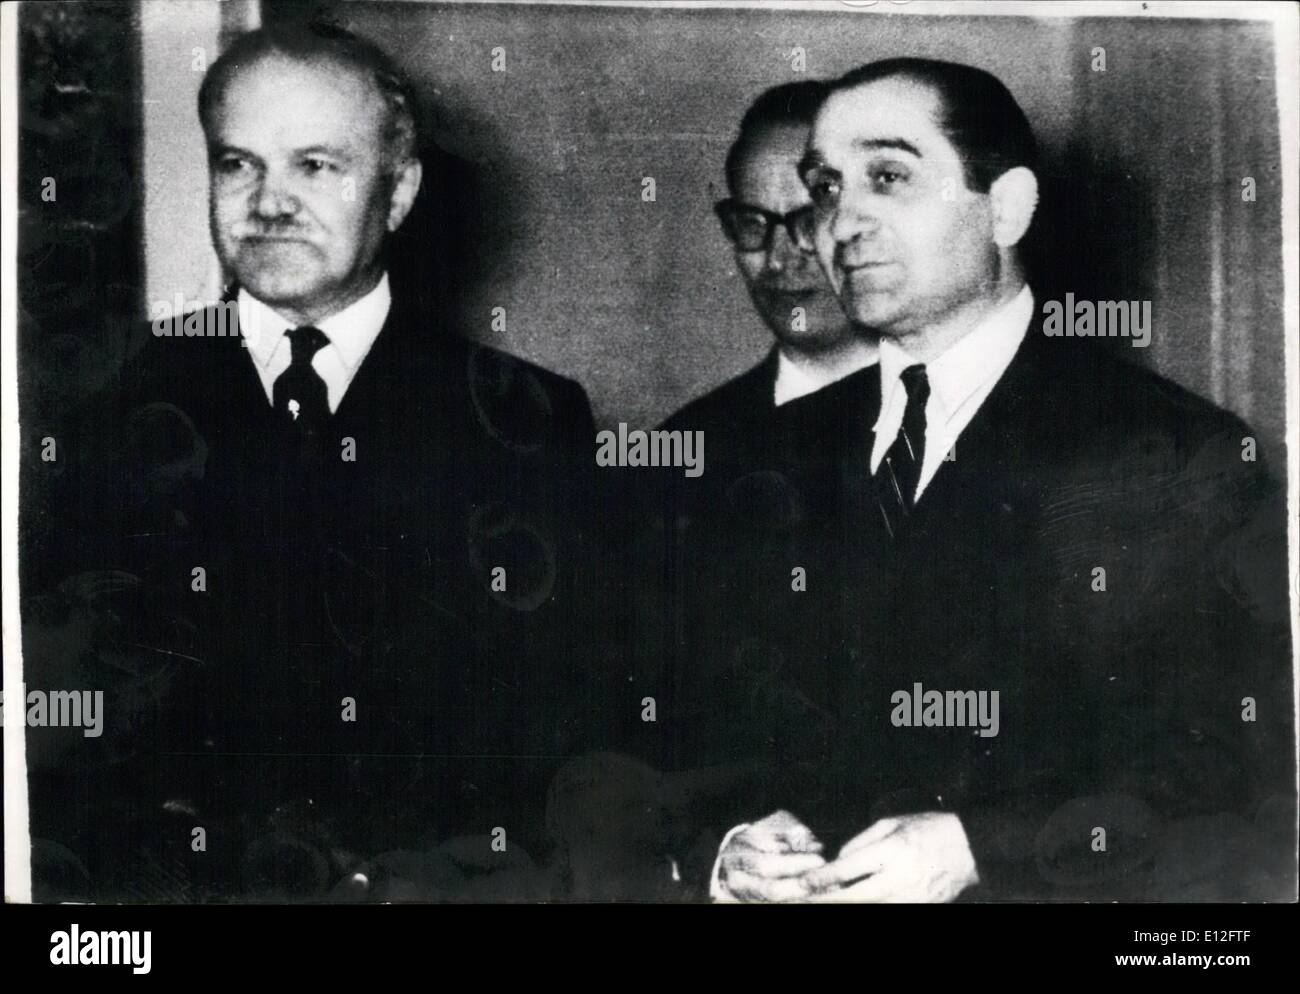 Enero 09, 2012 - El Sr. Mendes-France llegó anoche en Ginebra para reunirse con el Sr. Molotov. General Naguib acogió en El Cairo Foto de stock